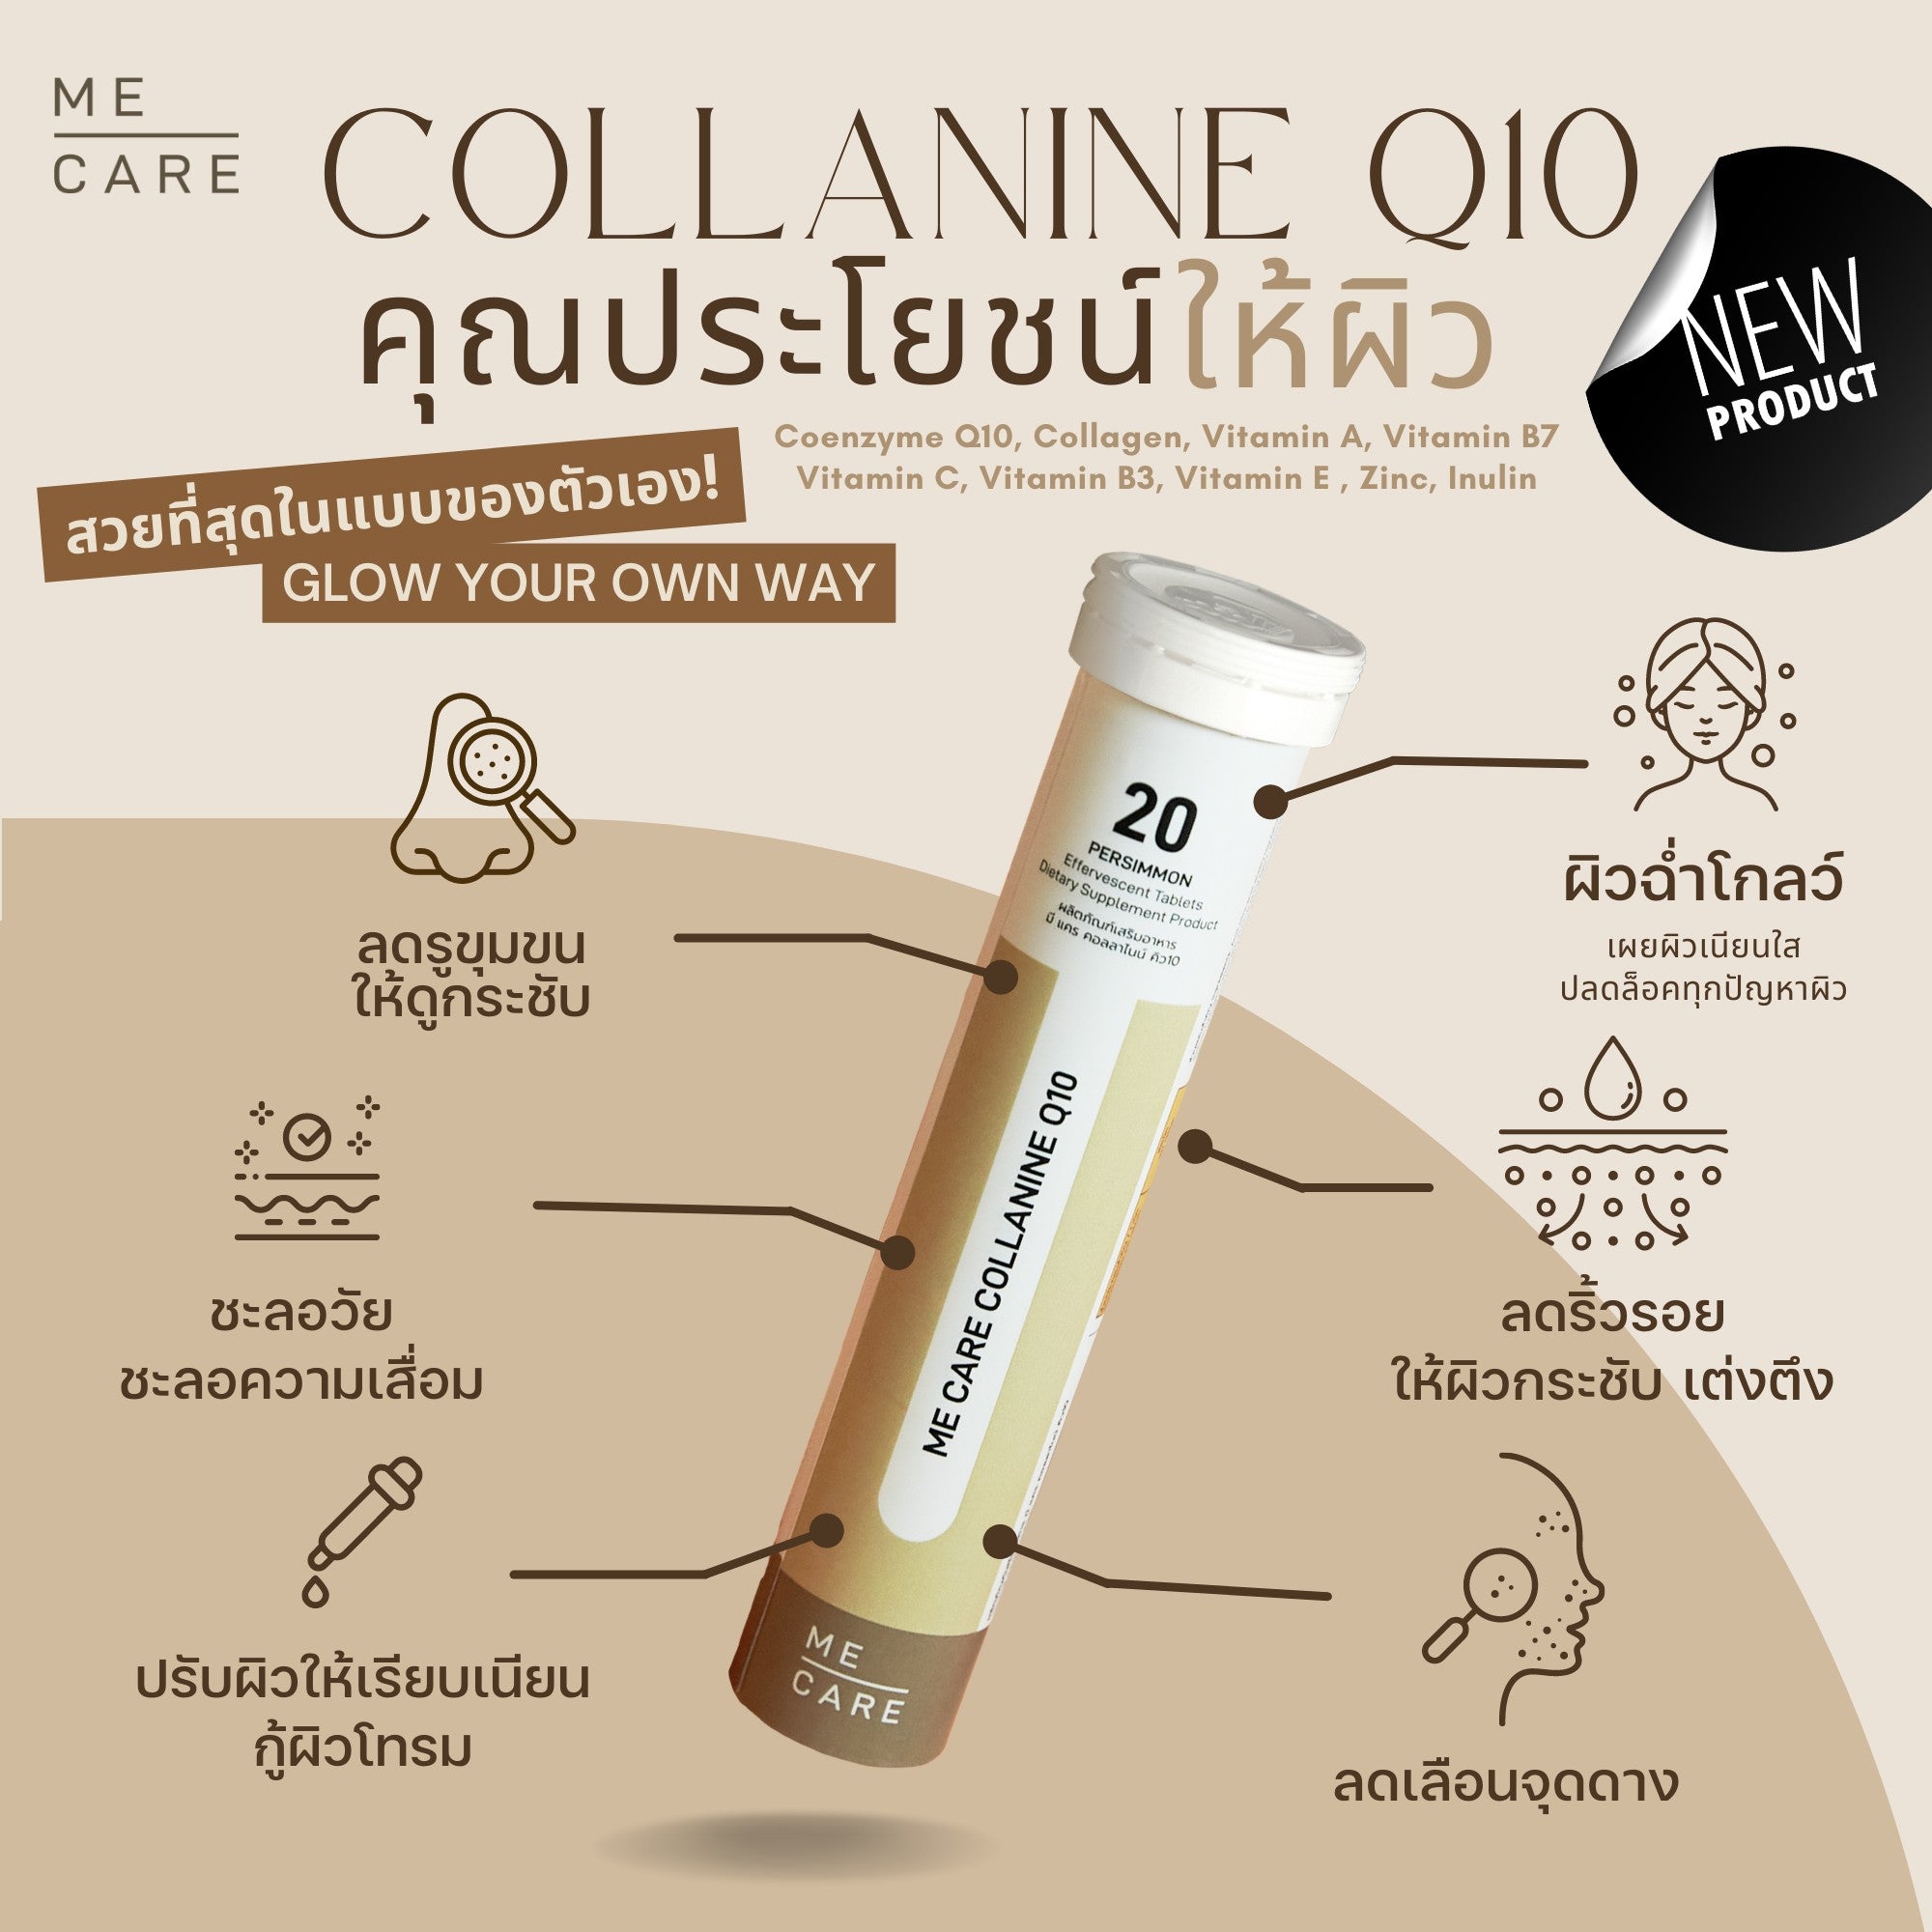 Mecare Collanine Q10 Individual Tube